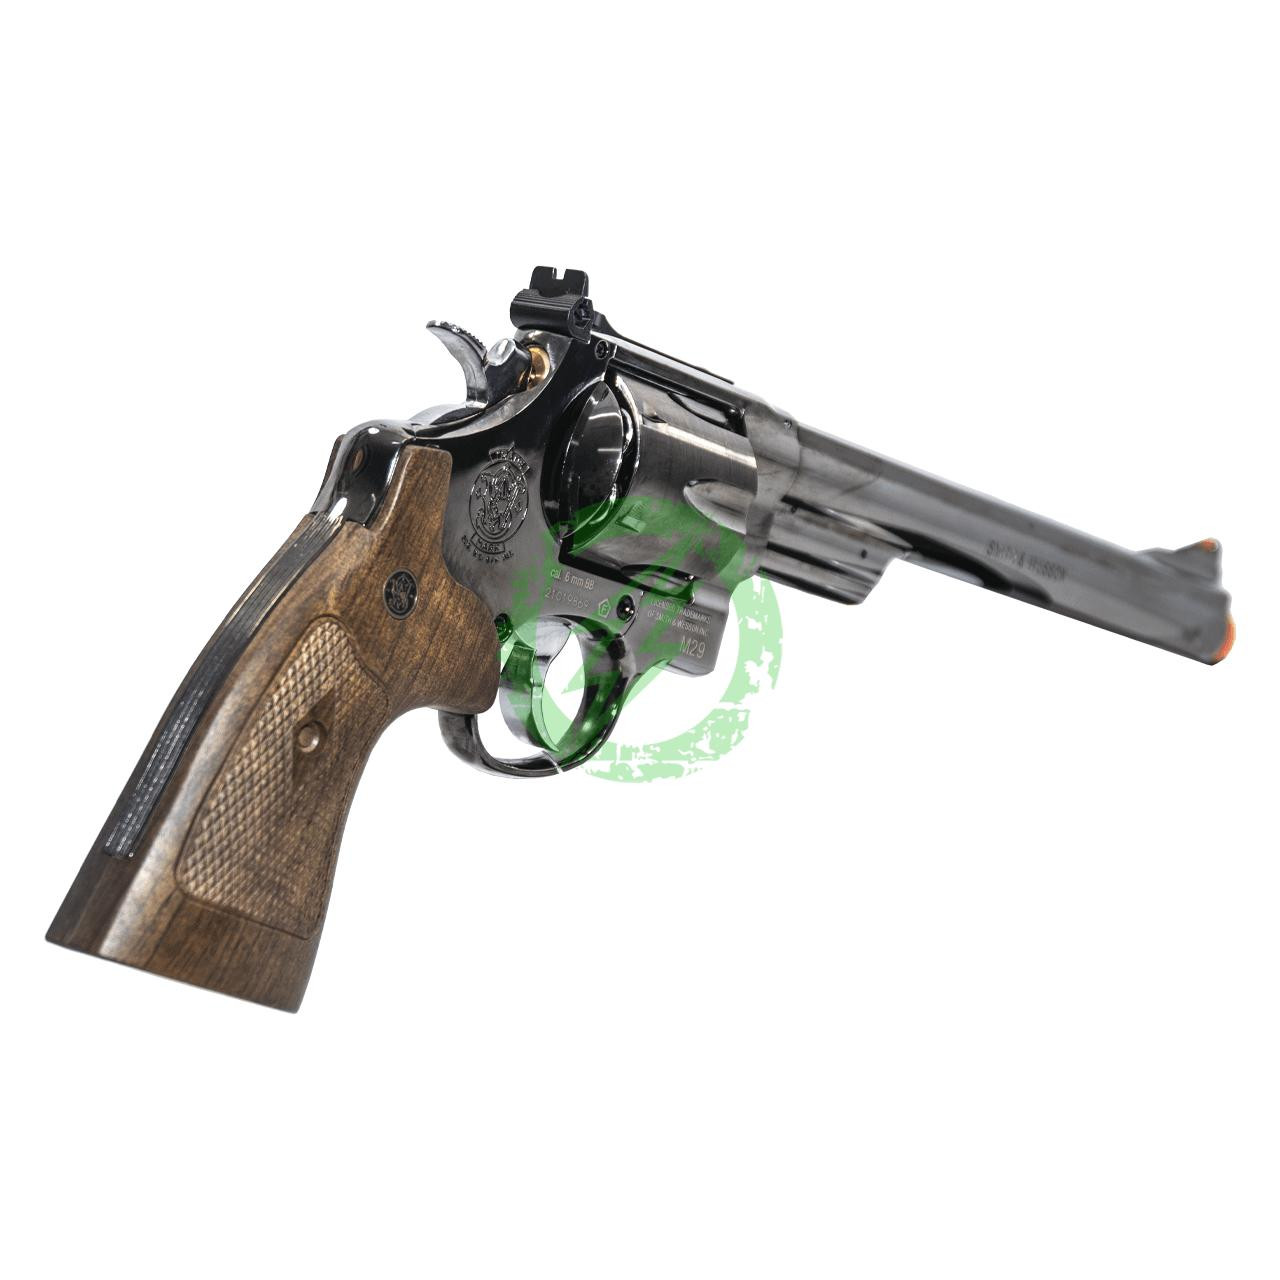 Umarex Elite Force Umarex | Elite Force S&W M29 8 3/8" Metal Revolver | Electroplated 